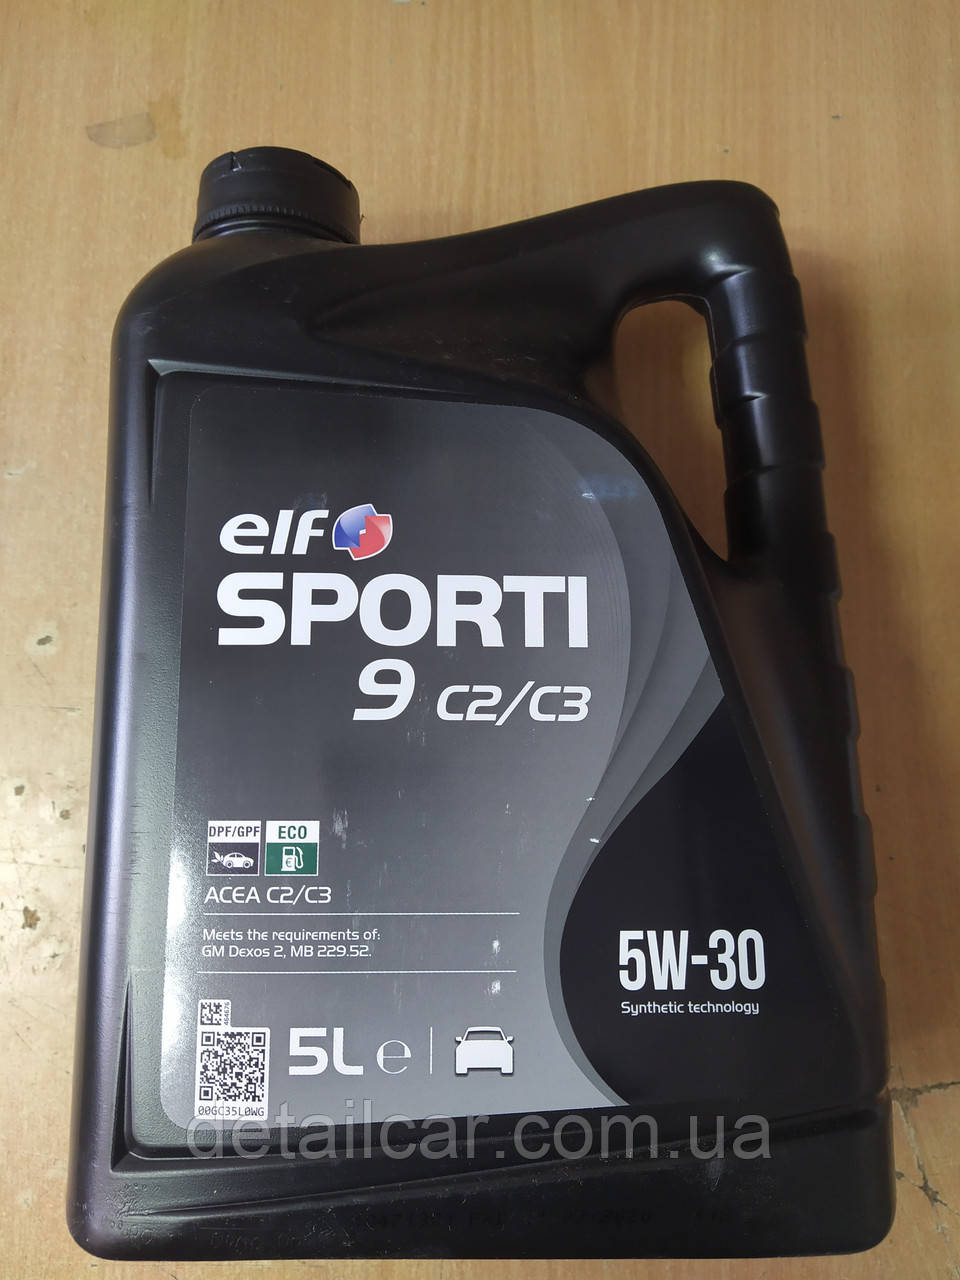 Синтетичне моторне масло ELF SPORTI 9 C2/C3 5W-30 5л. 208441 - виробництва Франції